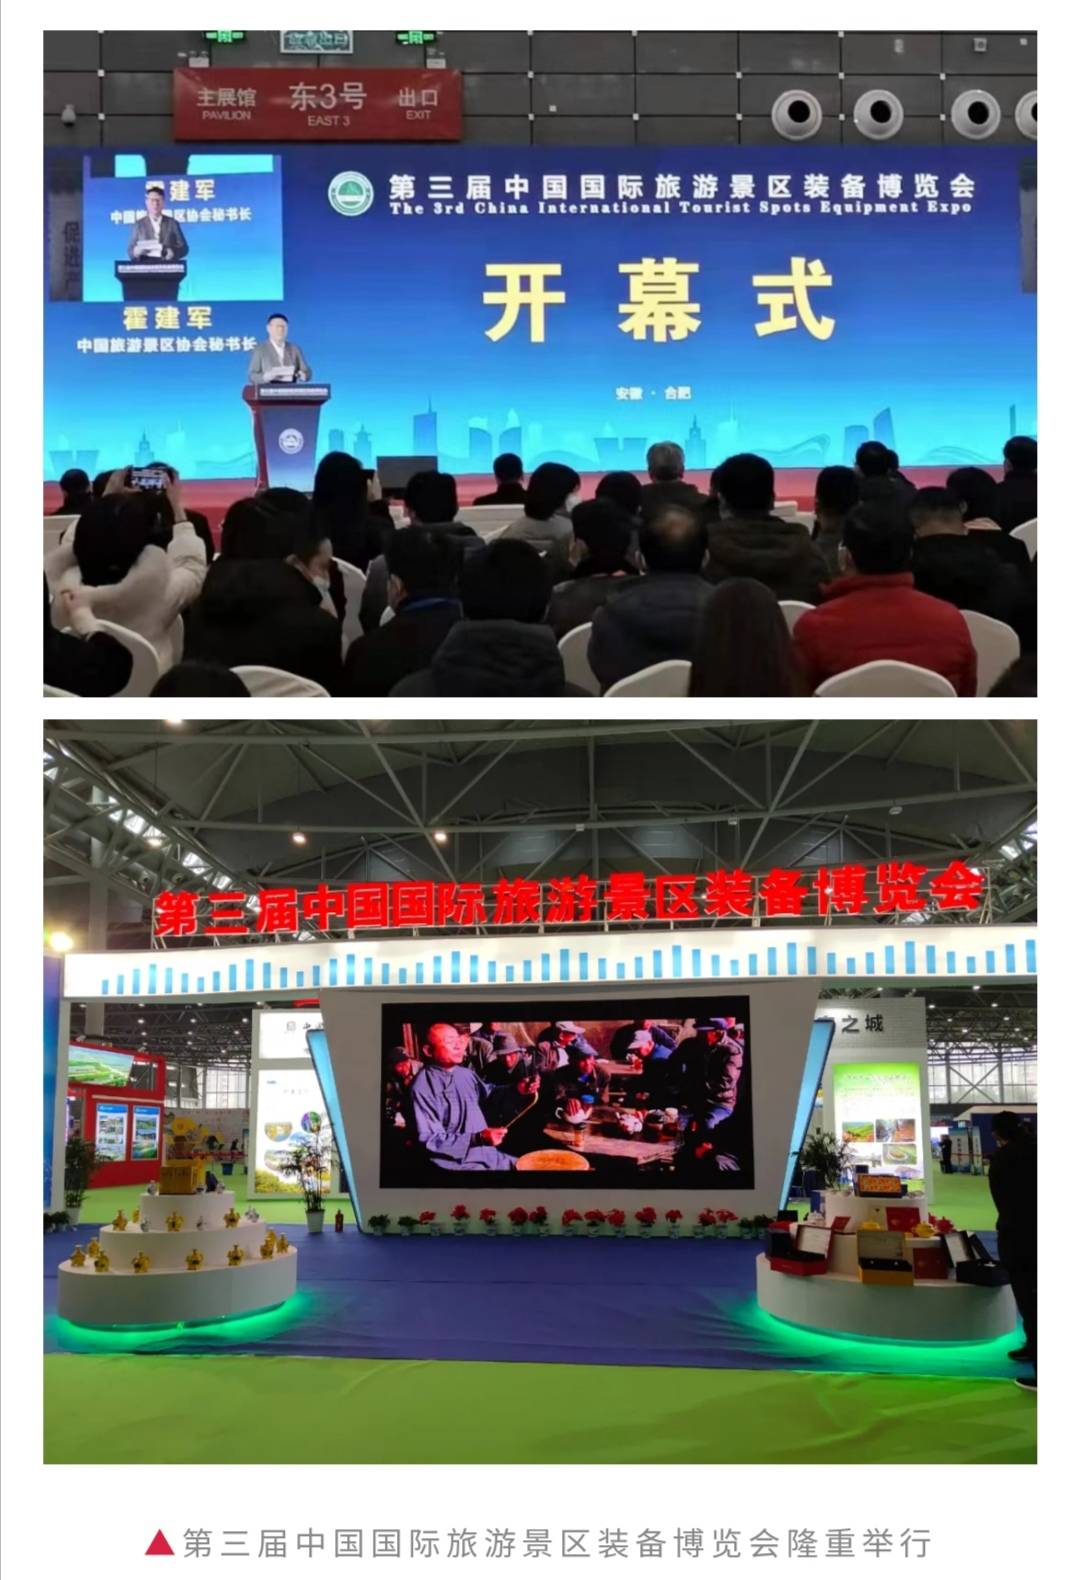 鼓掌！淮北精彩亮相第三届中国国际旅游景区装备博览会 ！